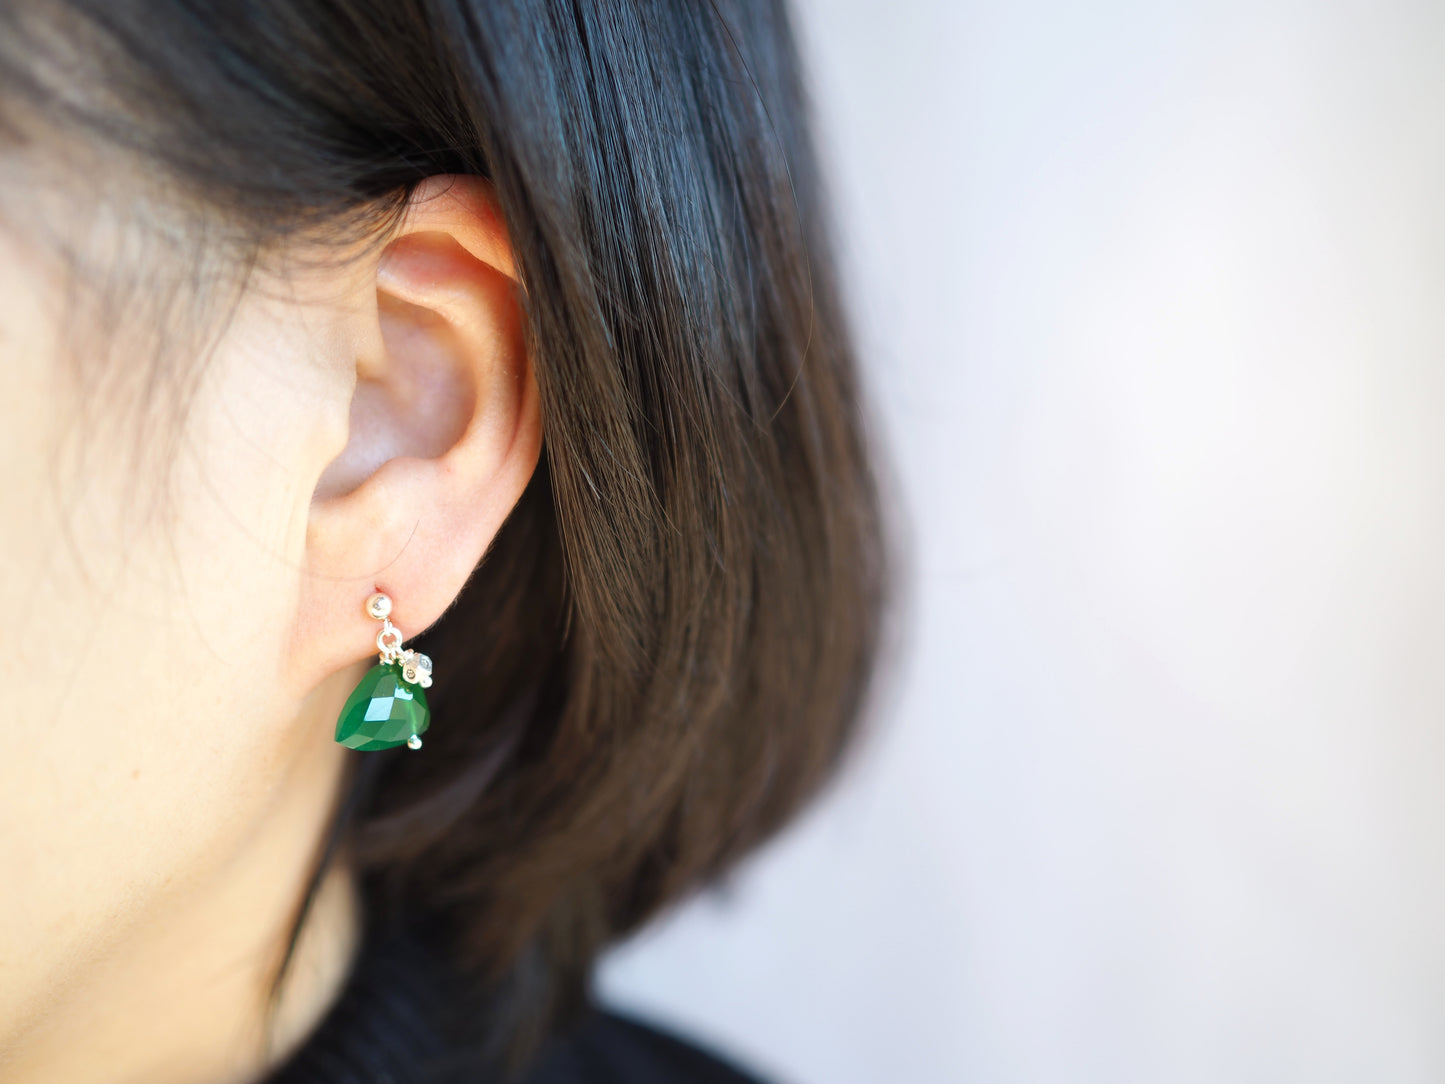 Green Onyx Earrings "Marquise" 